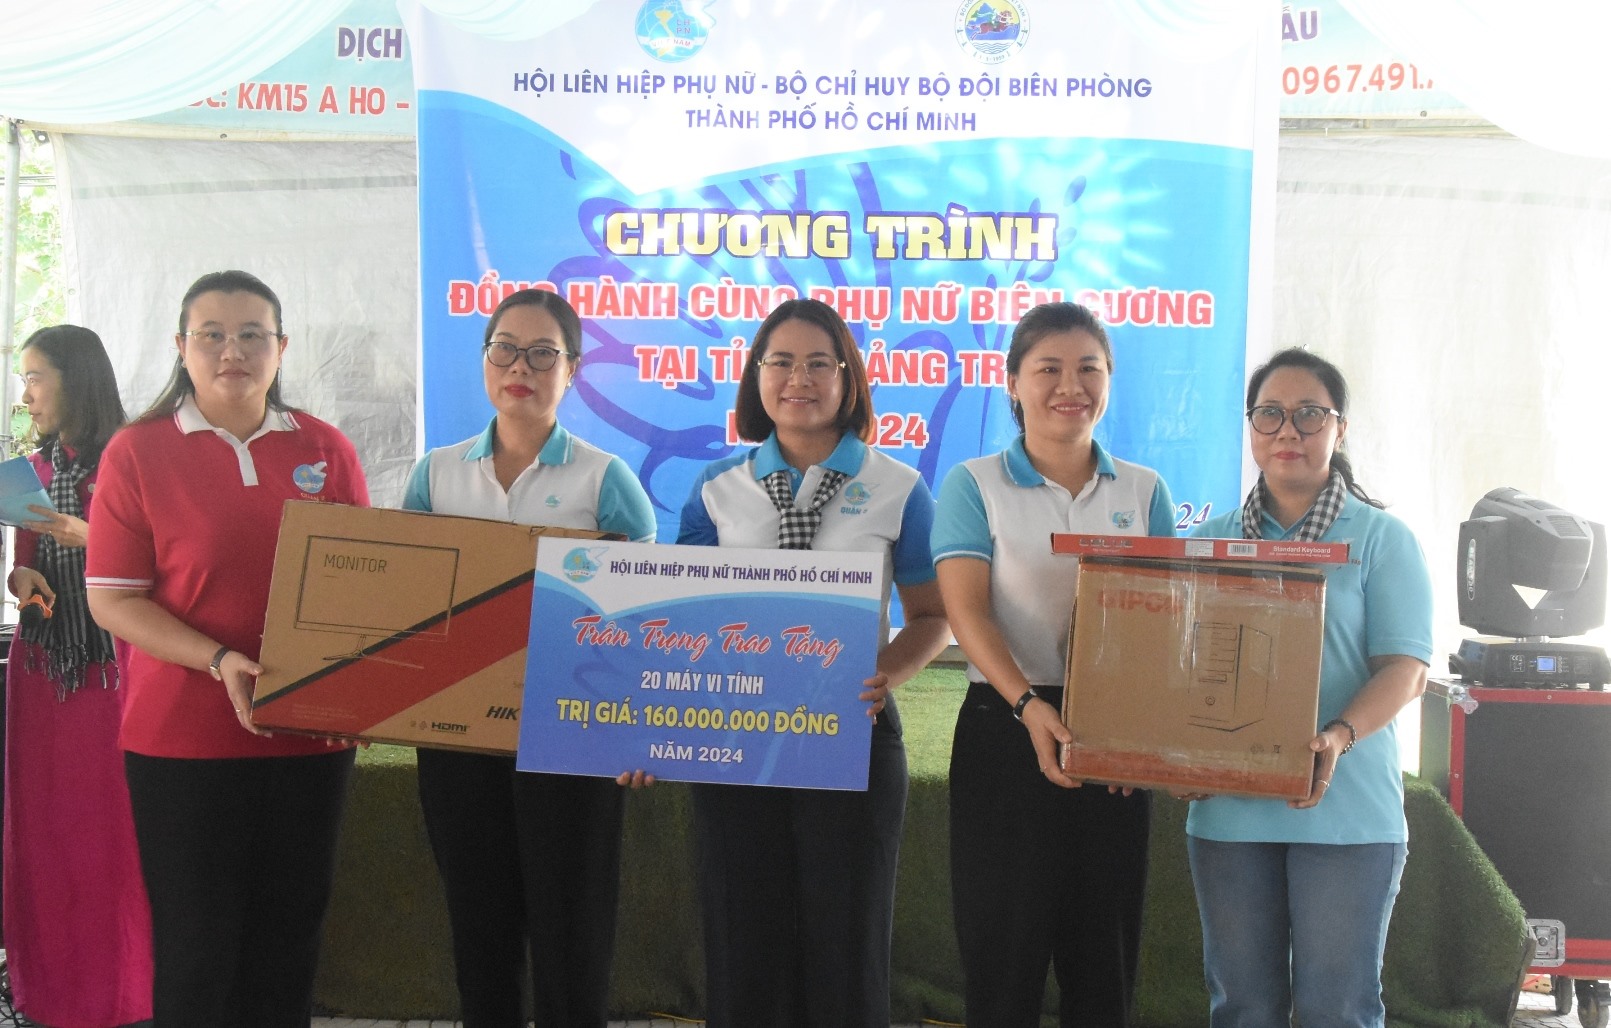 Trao 20 bộ máy vi tính cho đại diện Hội LHPN huyện Hướng Hóa và Đakrông - Ảnh: ĐV